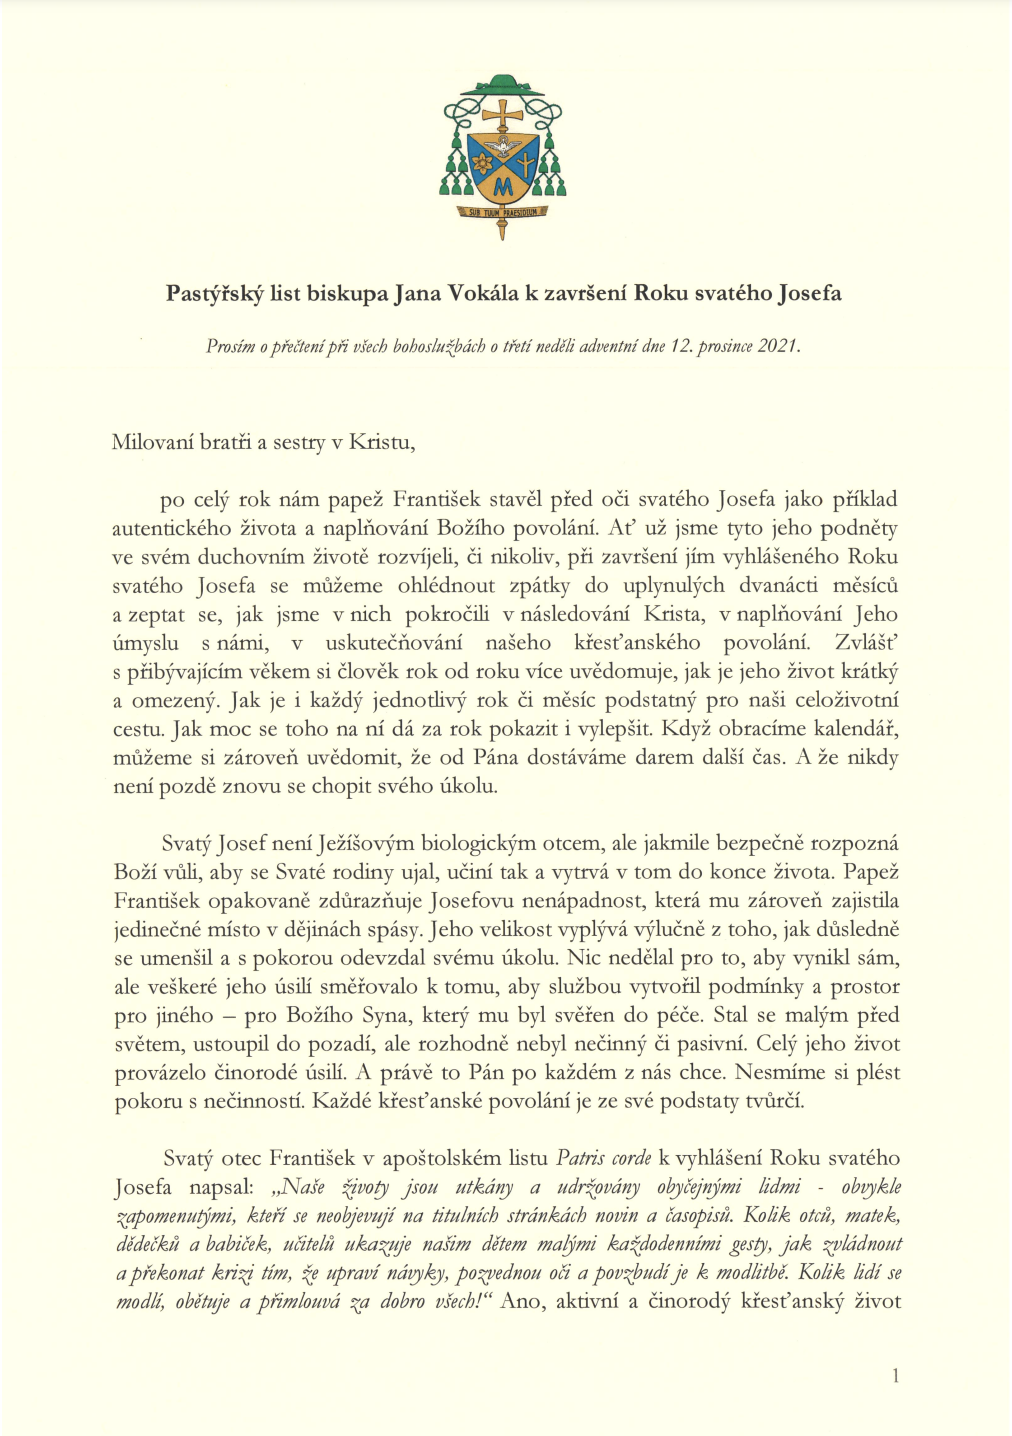 Pastýřský list biskupa Jana Vokála k Roku svatého Josefa